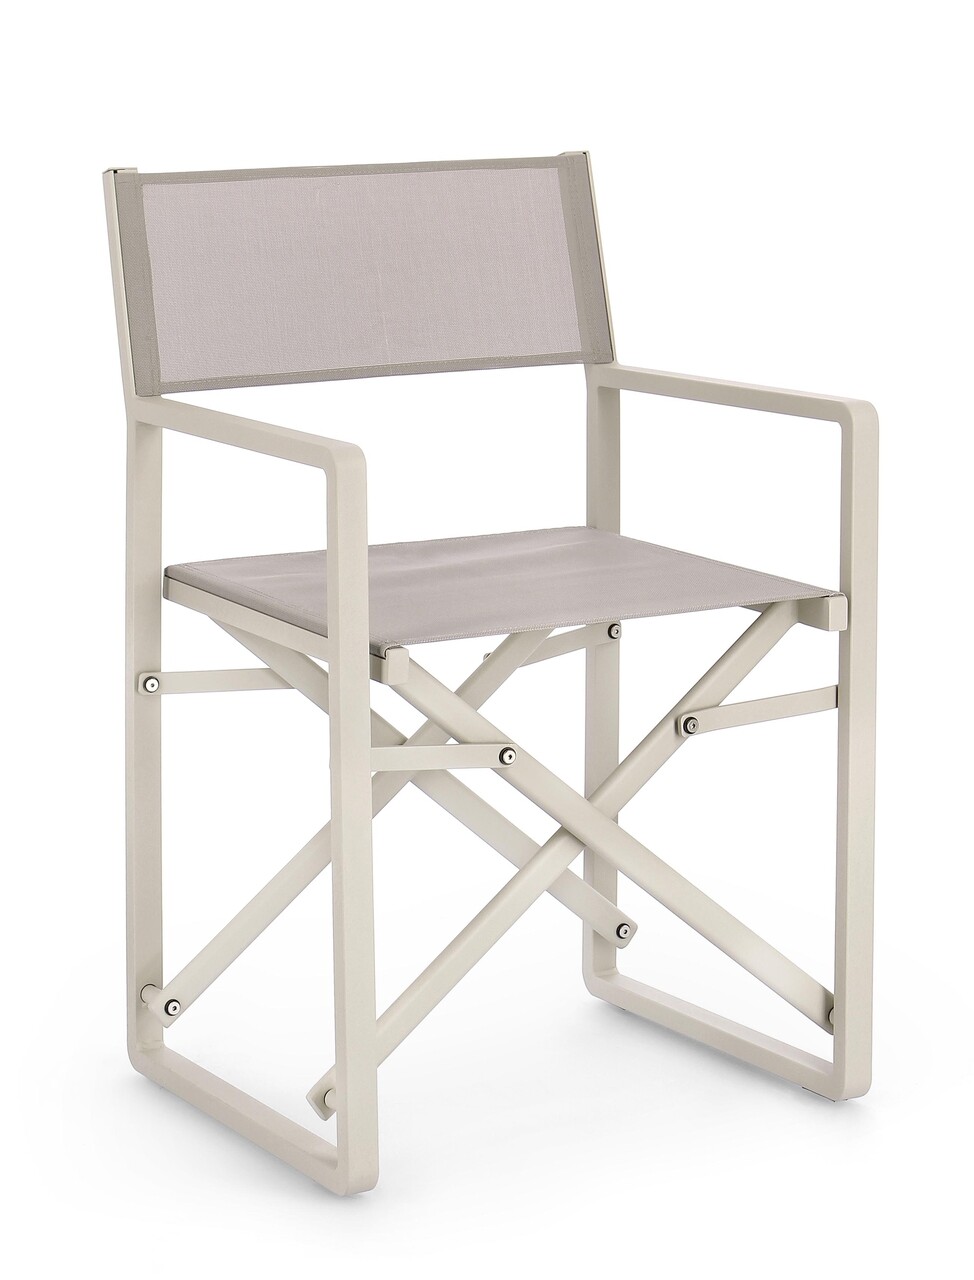 Konnor Összecsukható szék, Bizzotto, 55 x 50.5 x 84.5 cm, alumínium/textilén 1x1, világosszürke